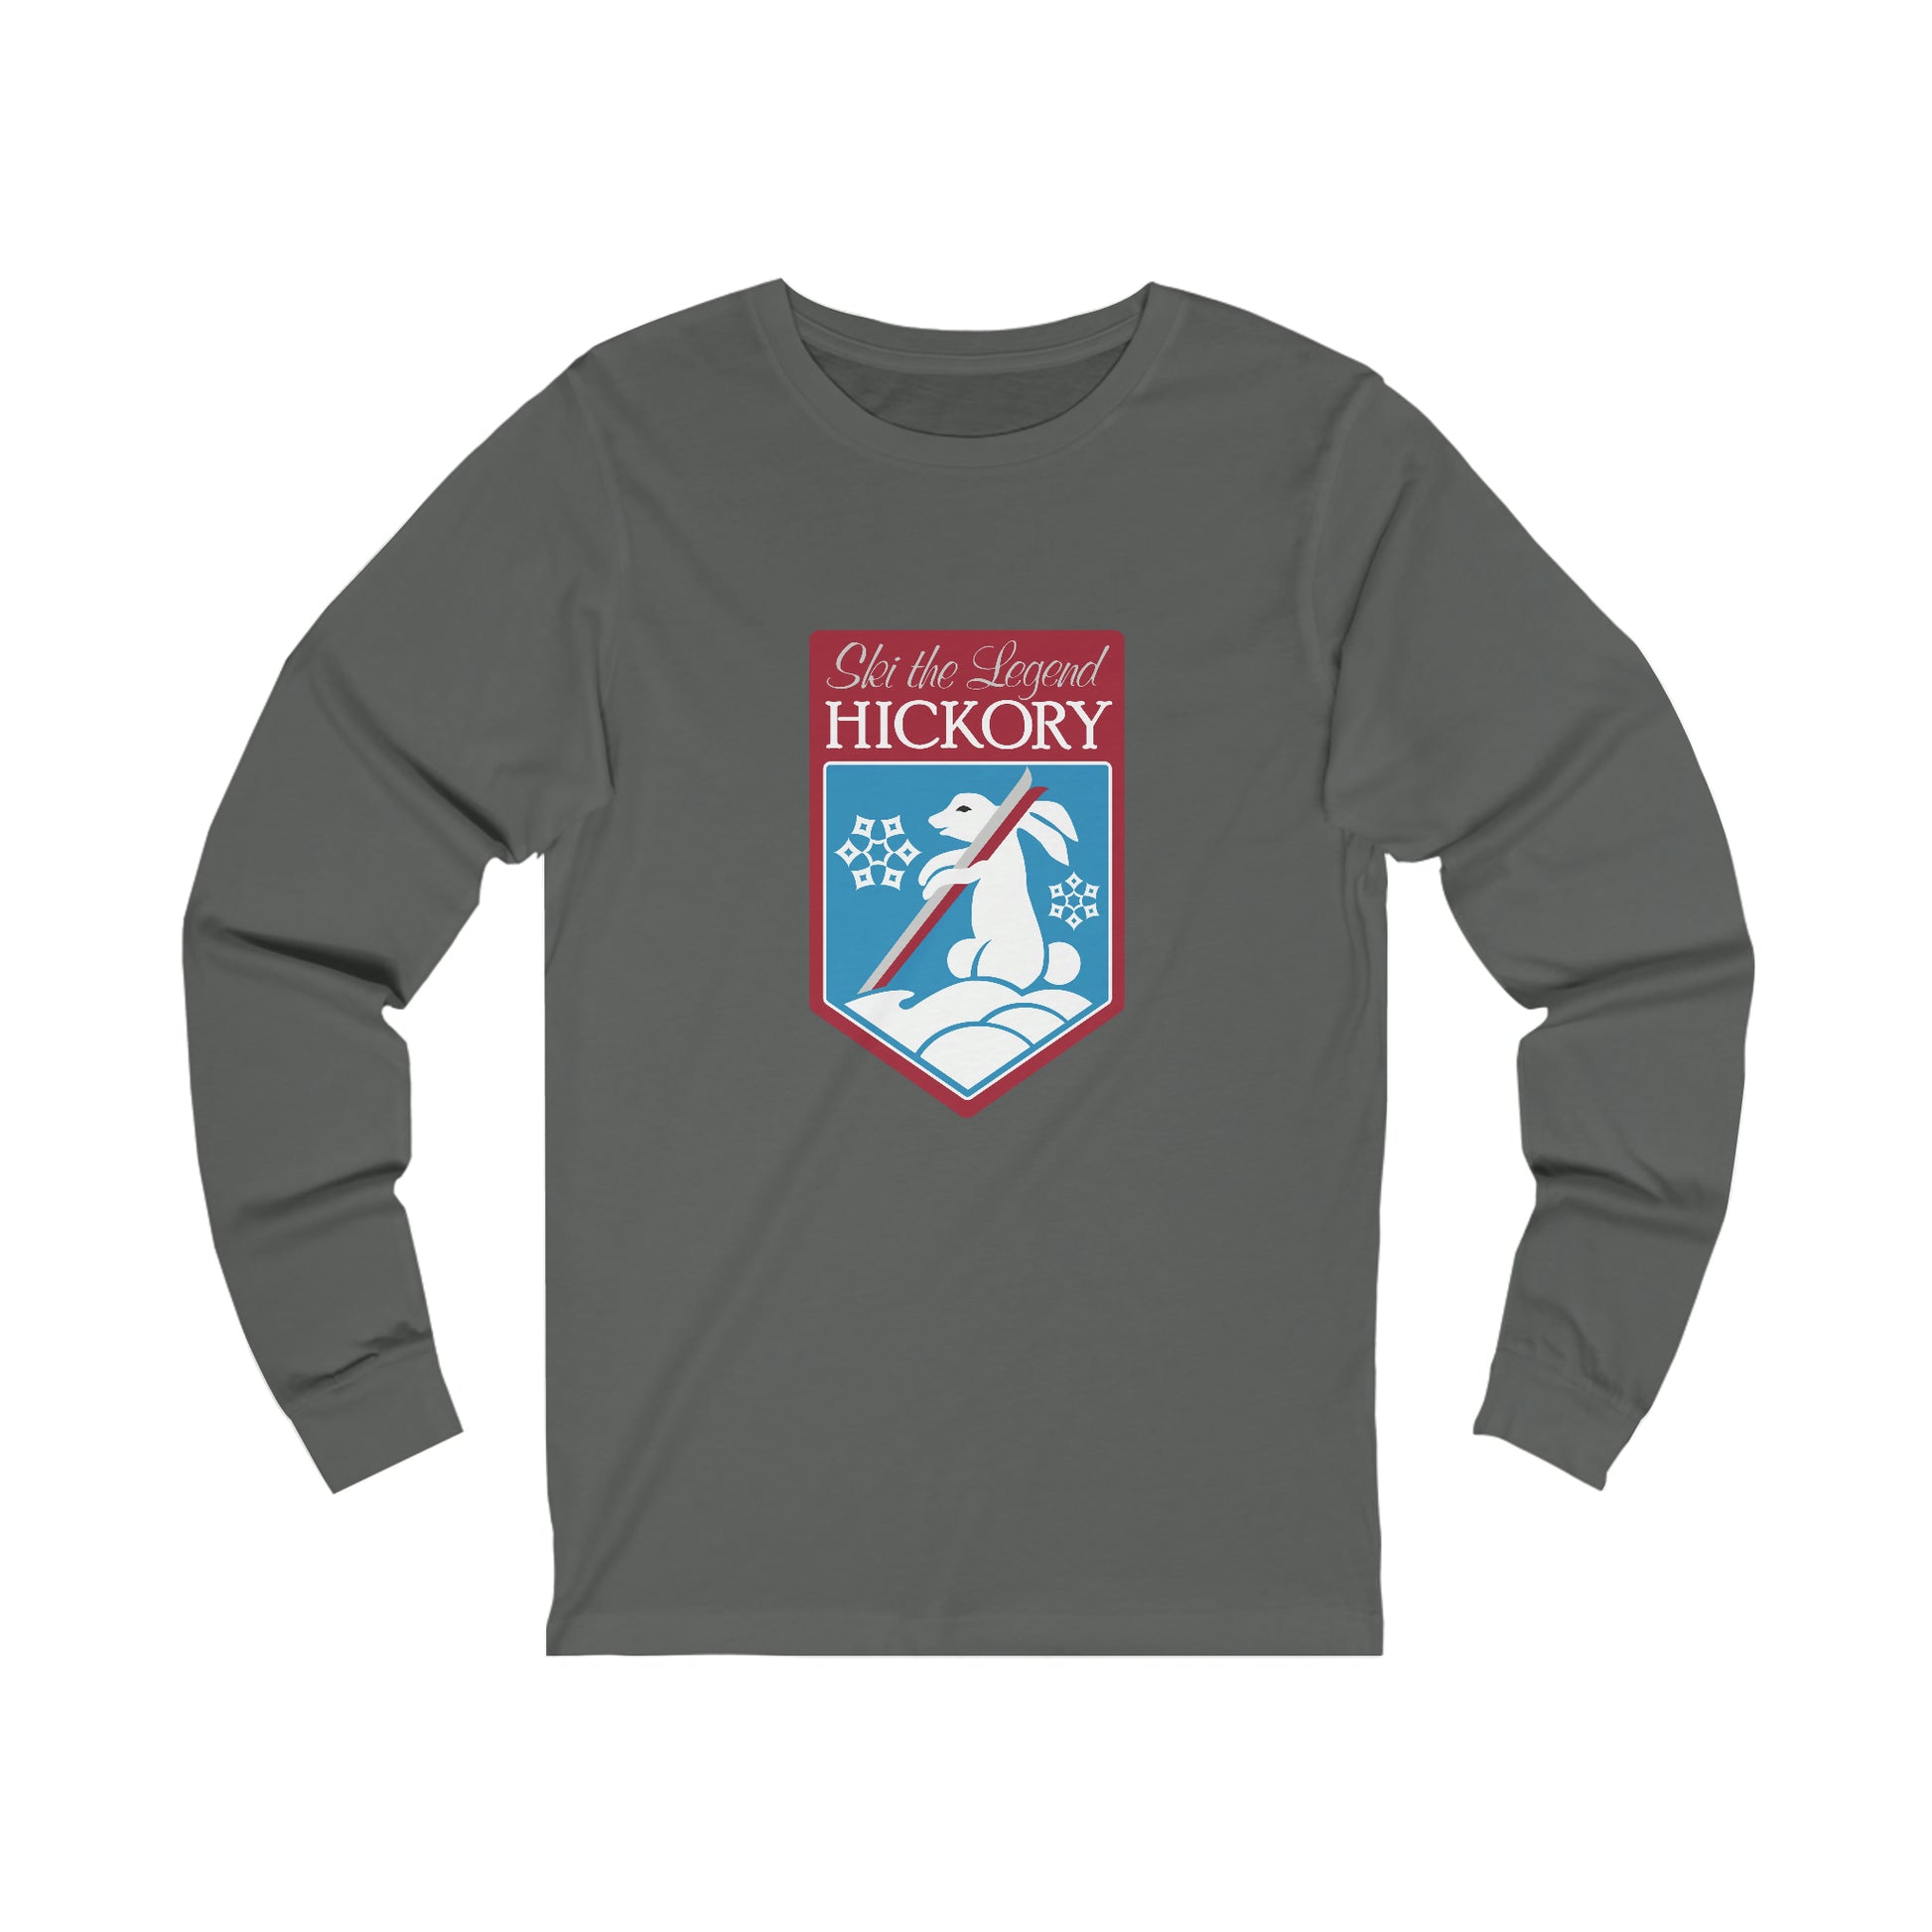 Grey shirt with Hickory Ski the Legend Logo